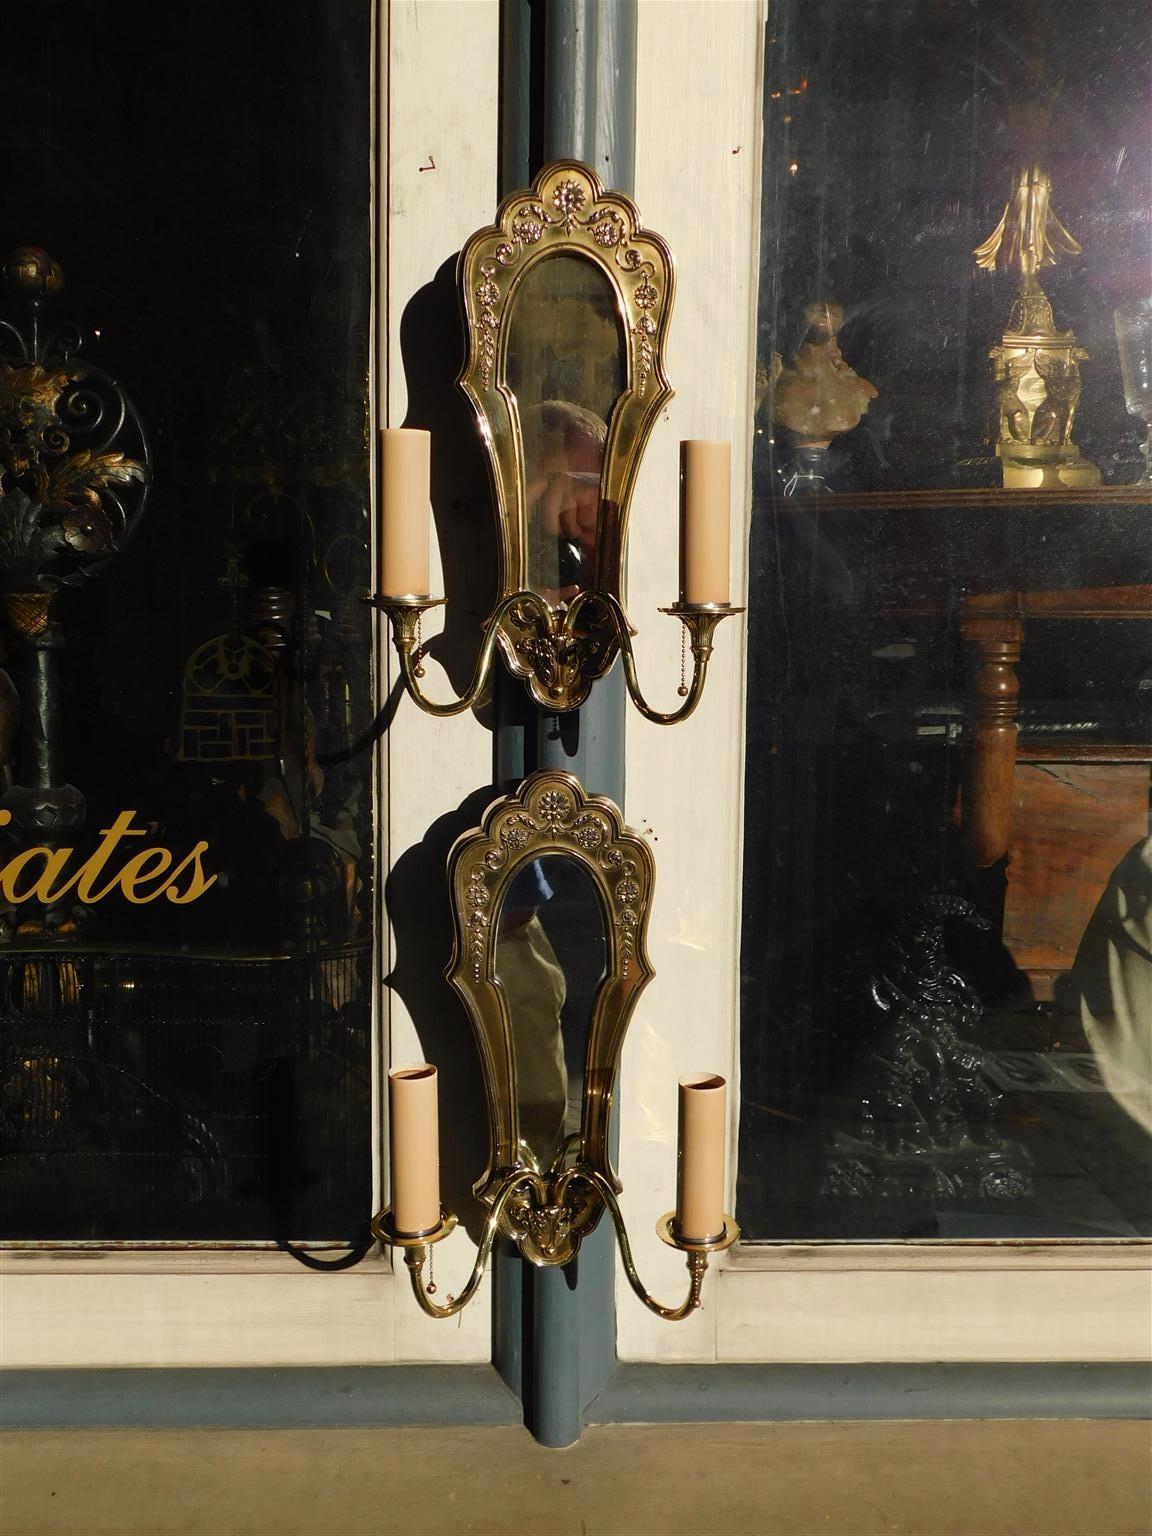 Ein Paar englische Messing-Lüster mit zwei verschnörkelten Armen, Medaillons, abgestuften Glockenblumen und Akanthusmotiv. Ein Paar wurde elektrifiziert und ursprünglich mit Kerzen betrieben. Bei den Wandleuchtern ist das ursprüngliche versilberte